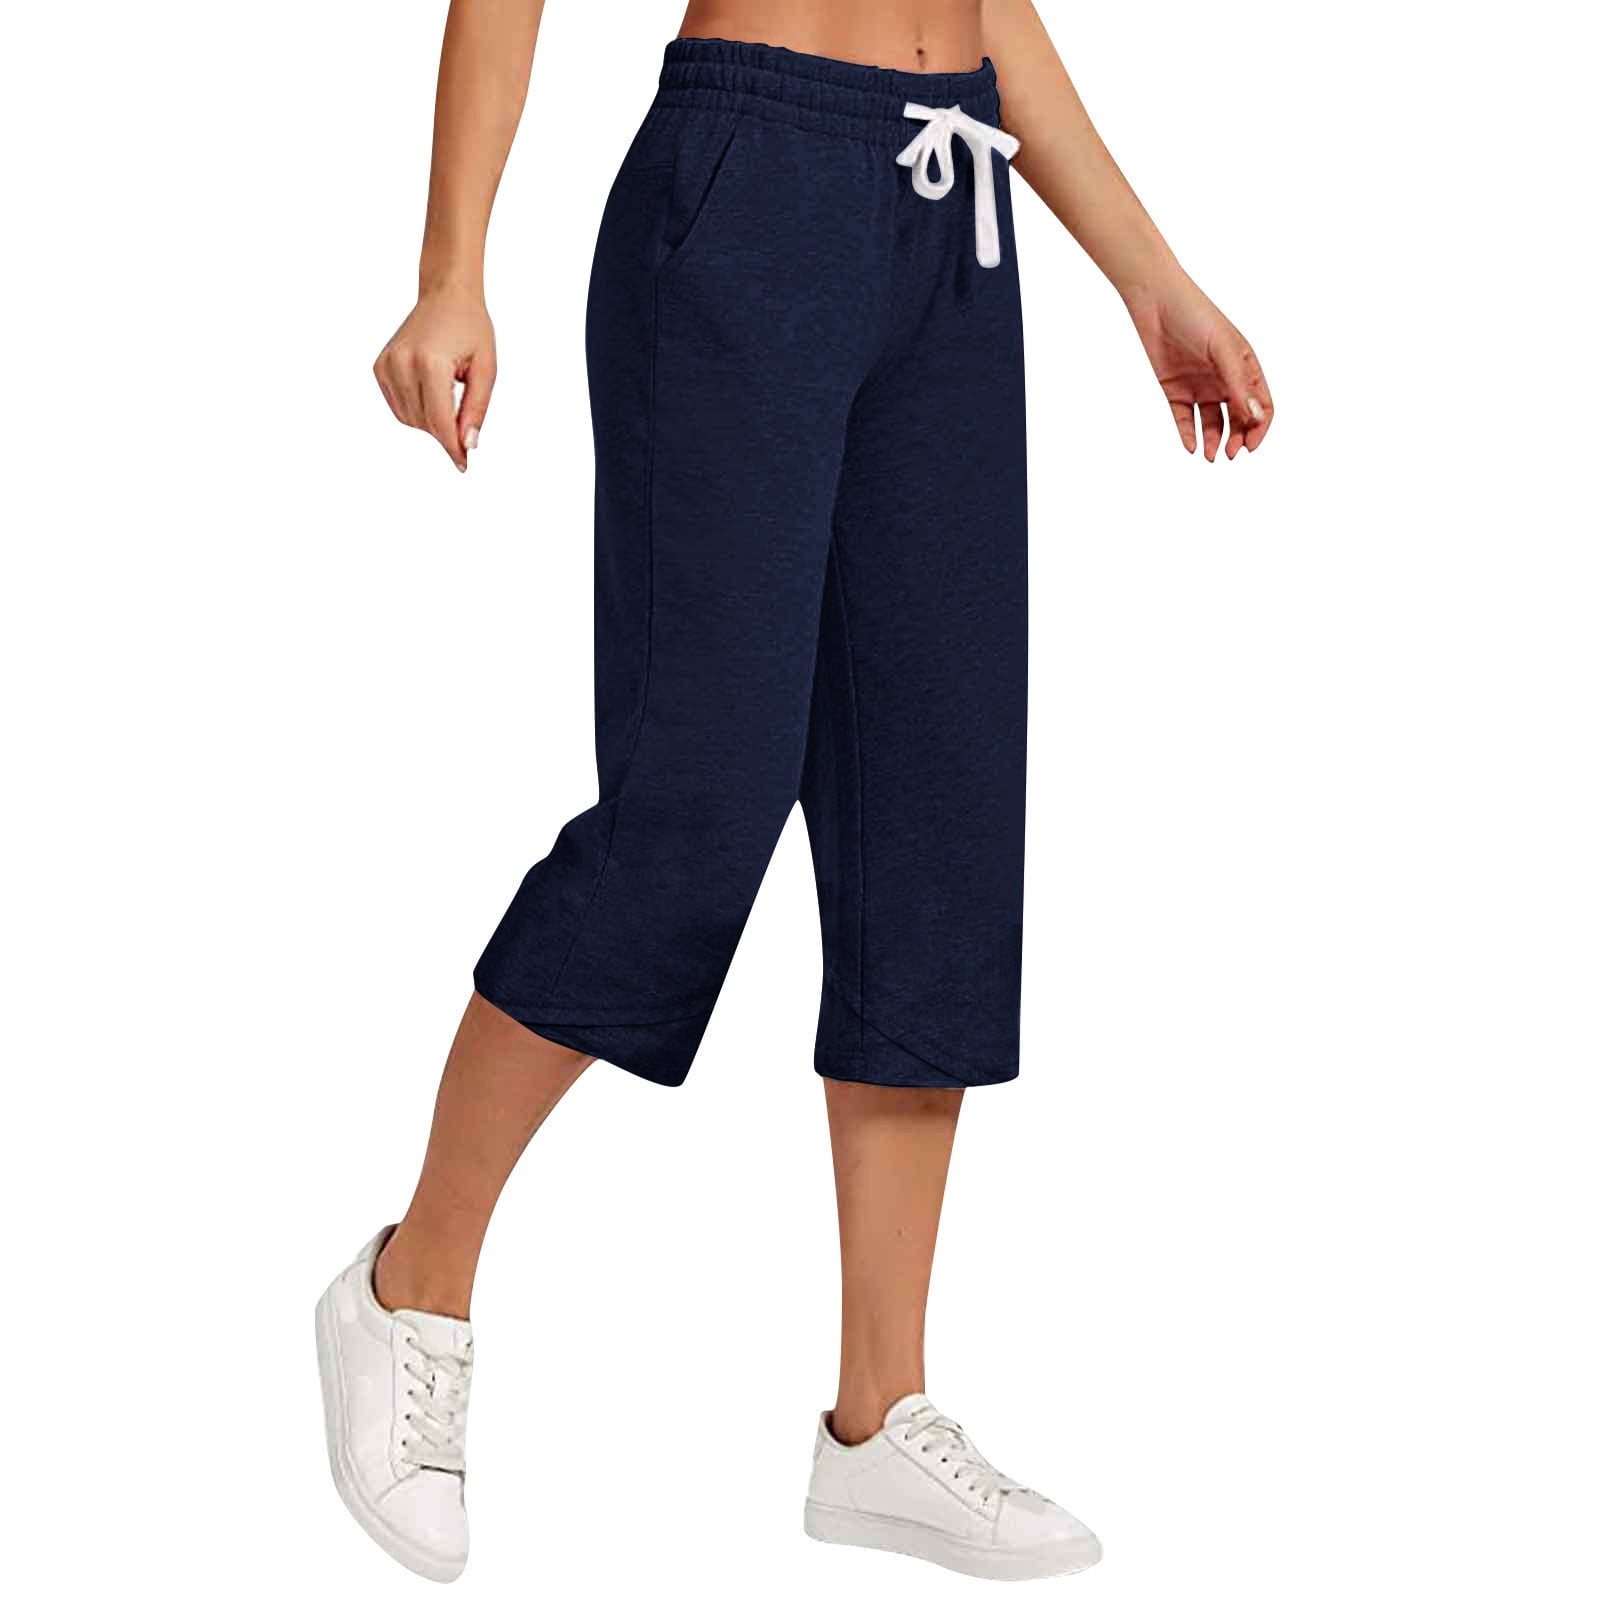 Pxxlle Womens Pants Plus Size Comfy Wide Leg Capri Pants with Pockets ...